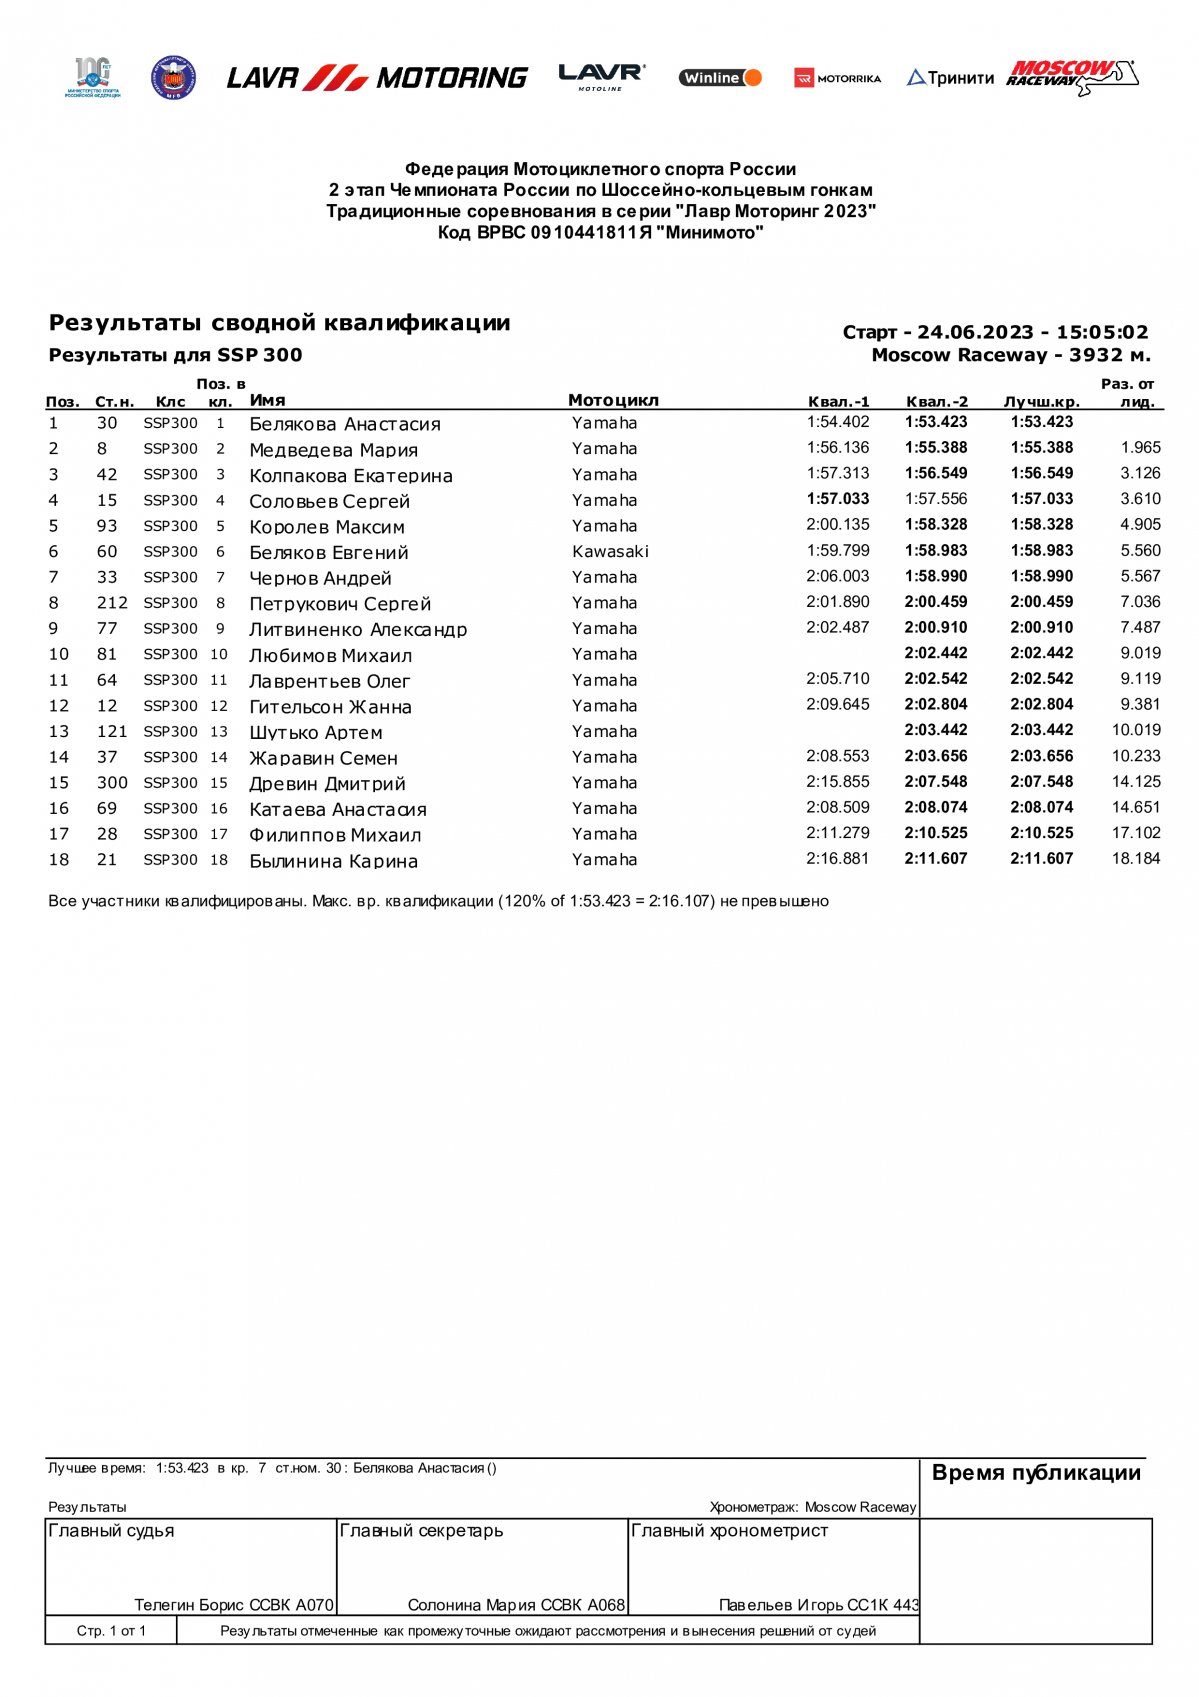 Результаты квалификации SSP-300, 2 этап, Moscow Raceway